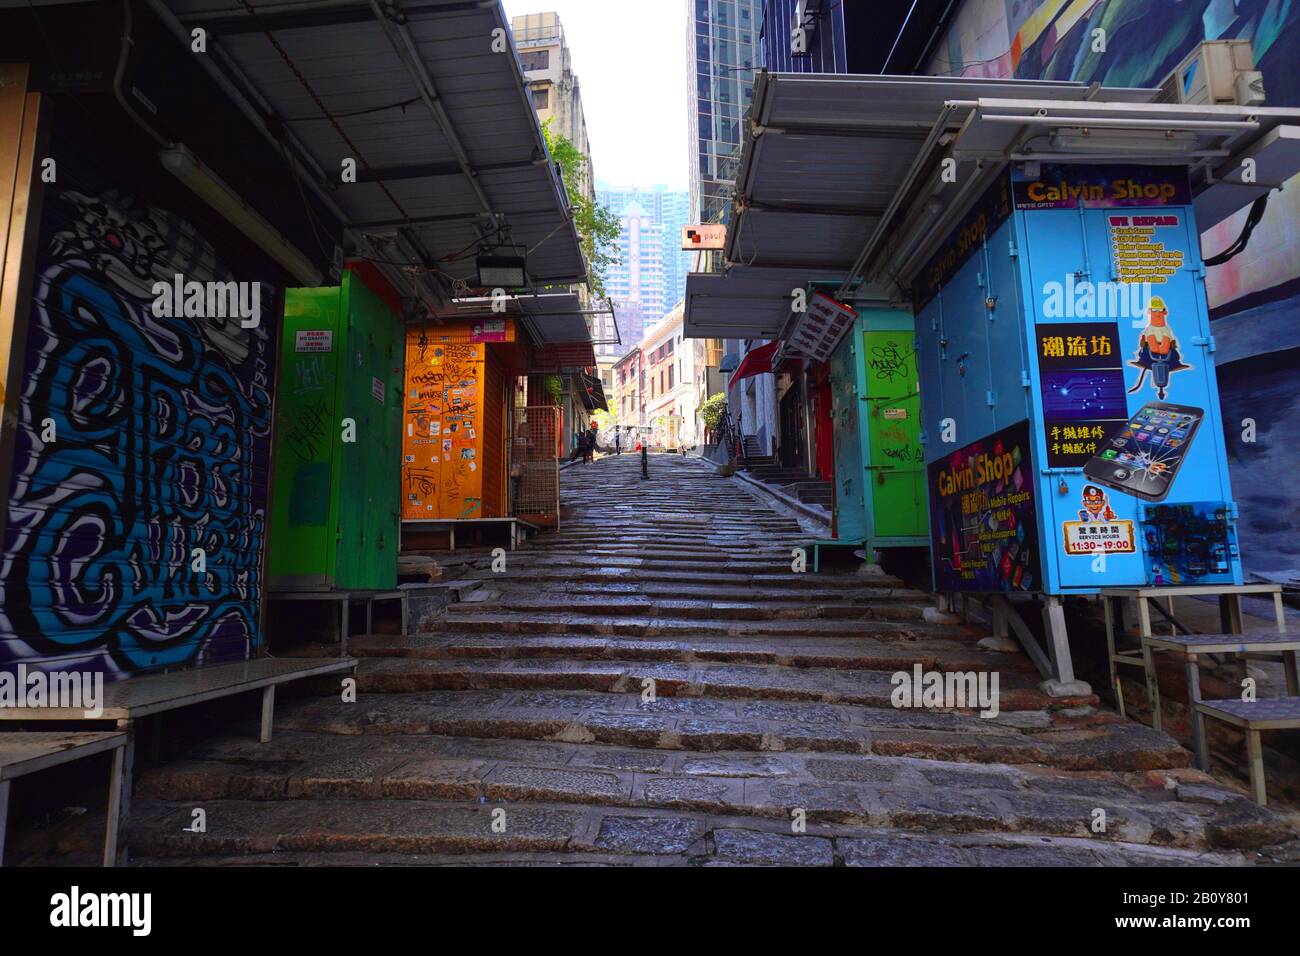 Hong Kong - 24 Novembre 2019: Pottinger Street (Stone Slab Street) Nel Centro. La strada è lastricata in modo irregolare da gradini in pietra di granito. Foto Stock